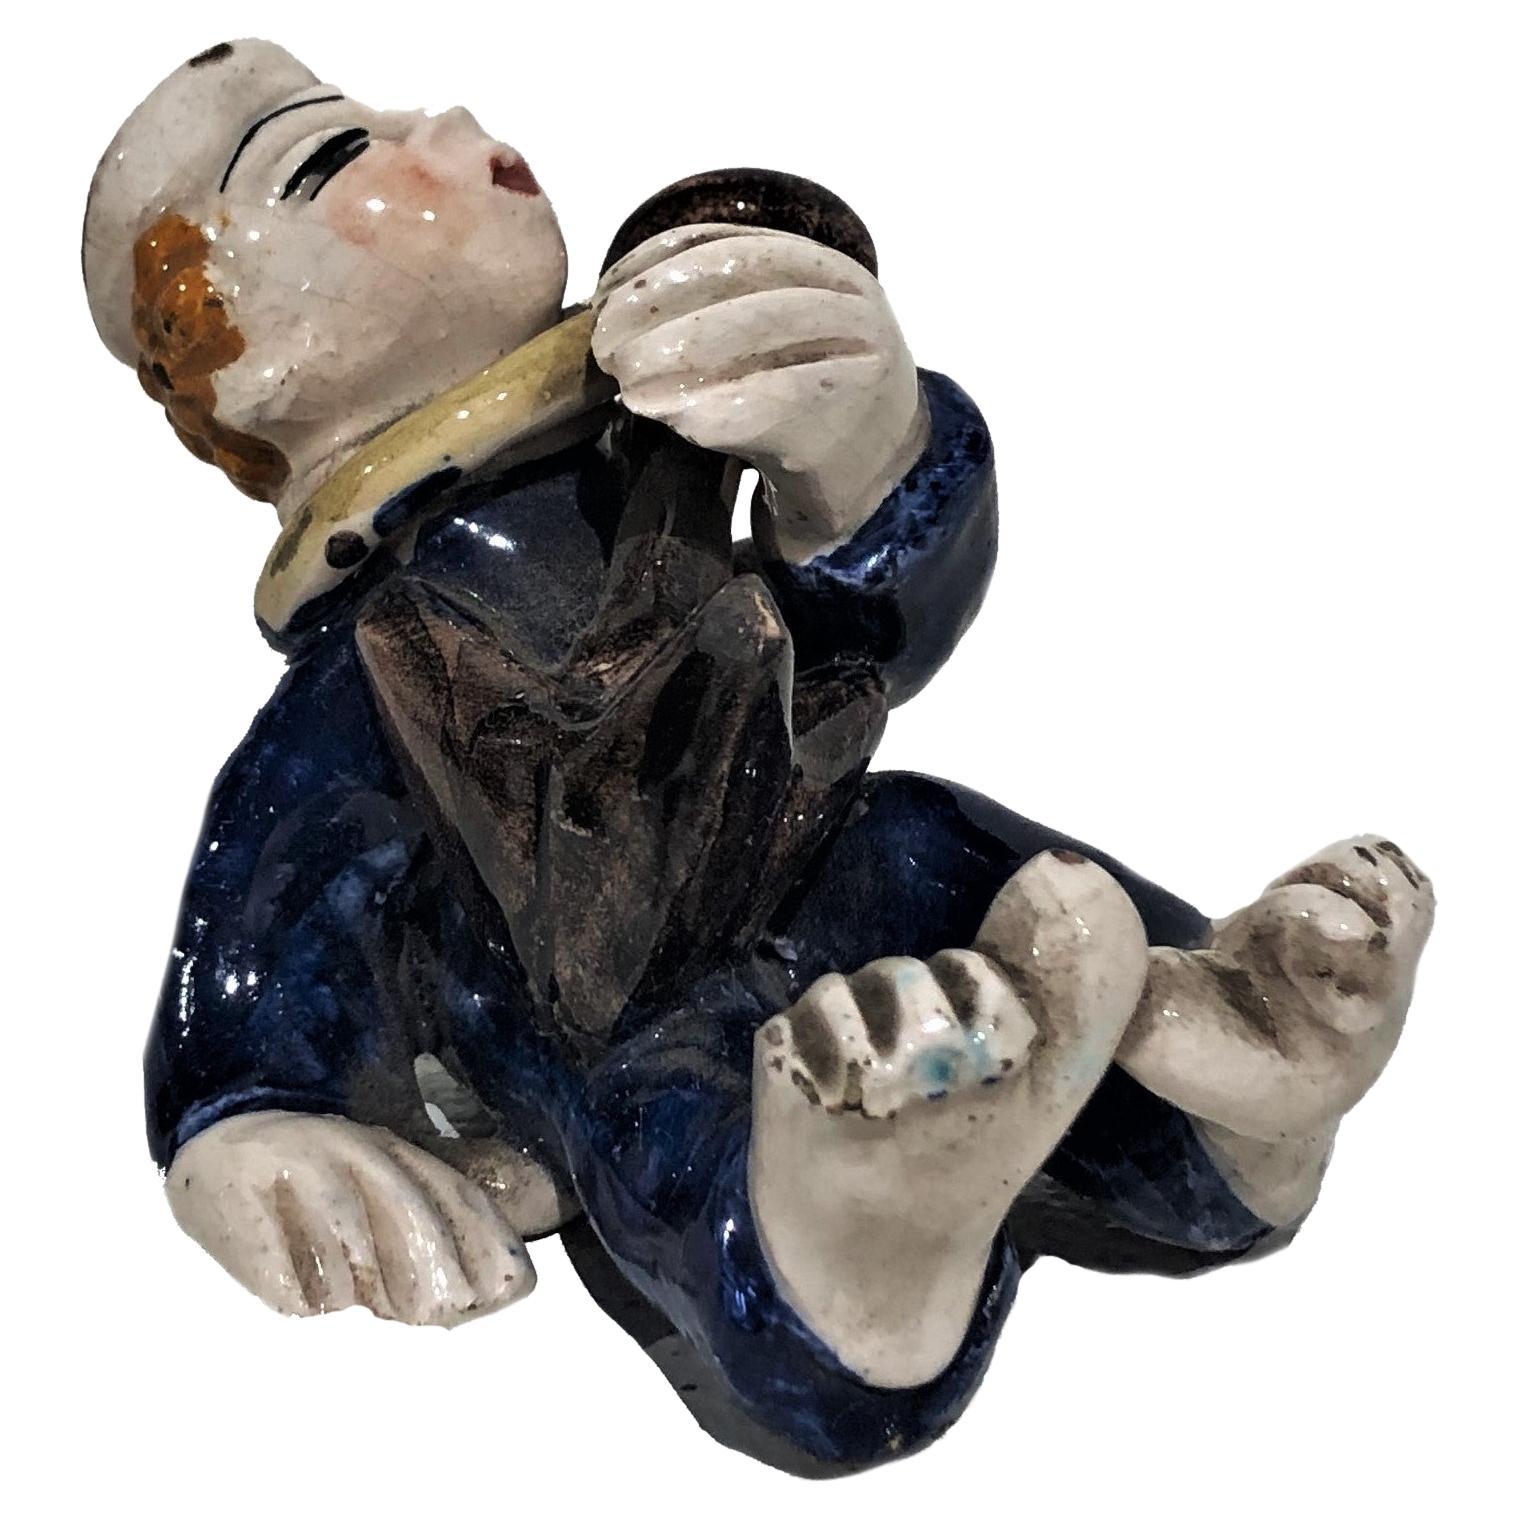 Vally Wiethelthier, Marin ivre, figurine en céramique Art déco, vers 1925